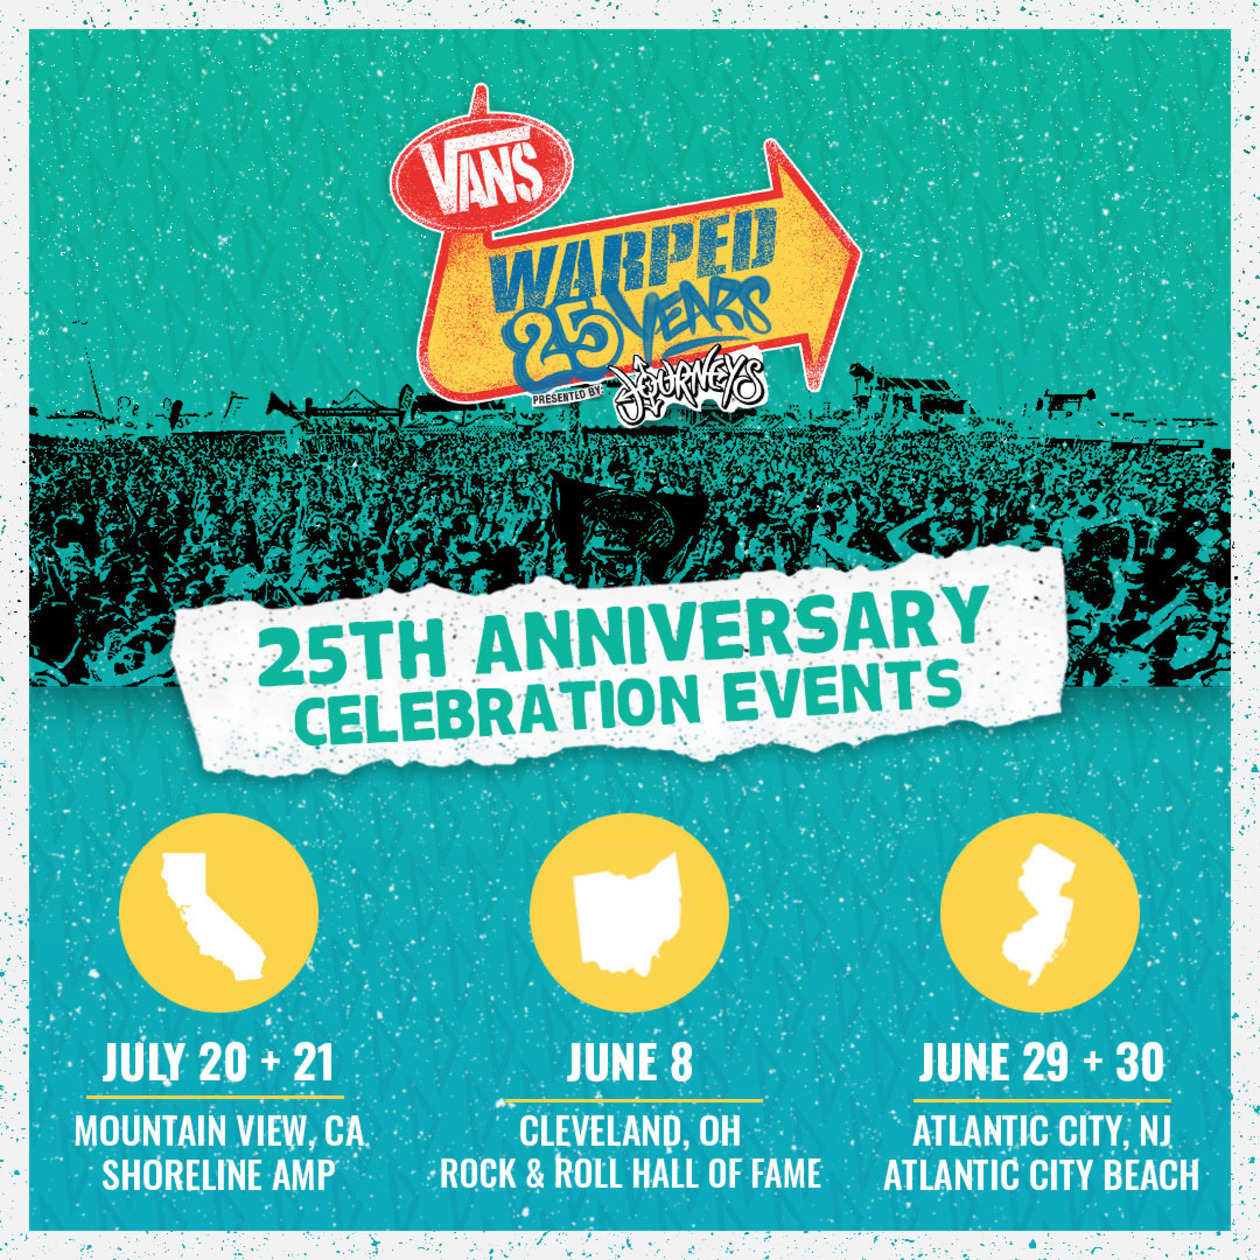 Vans Warped Tour 25th Anniversary Events